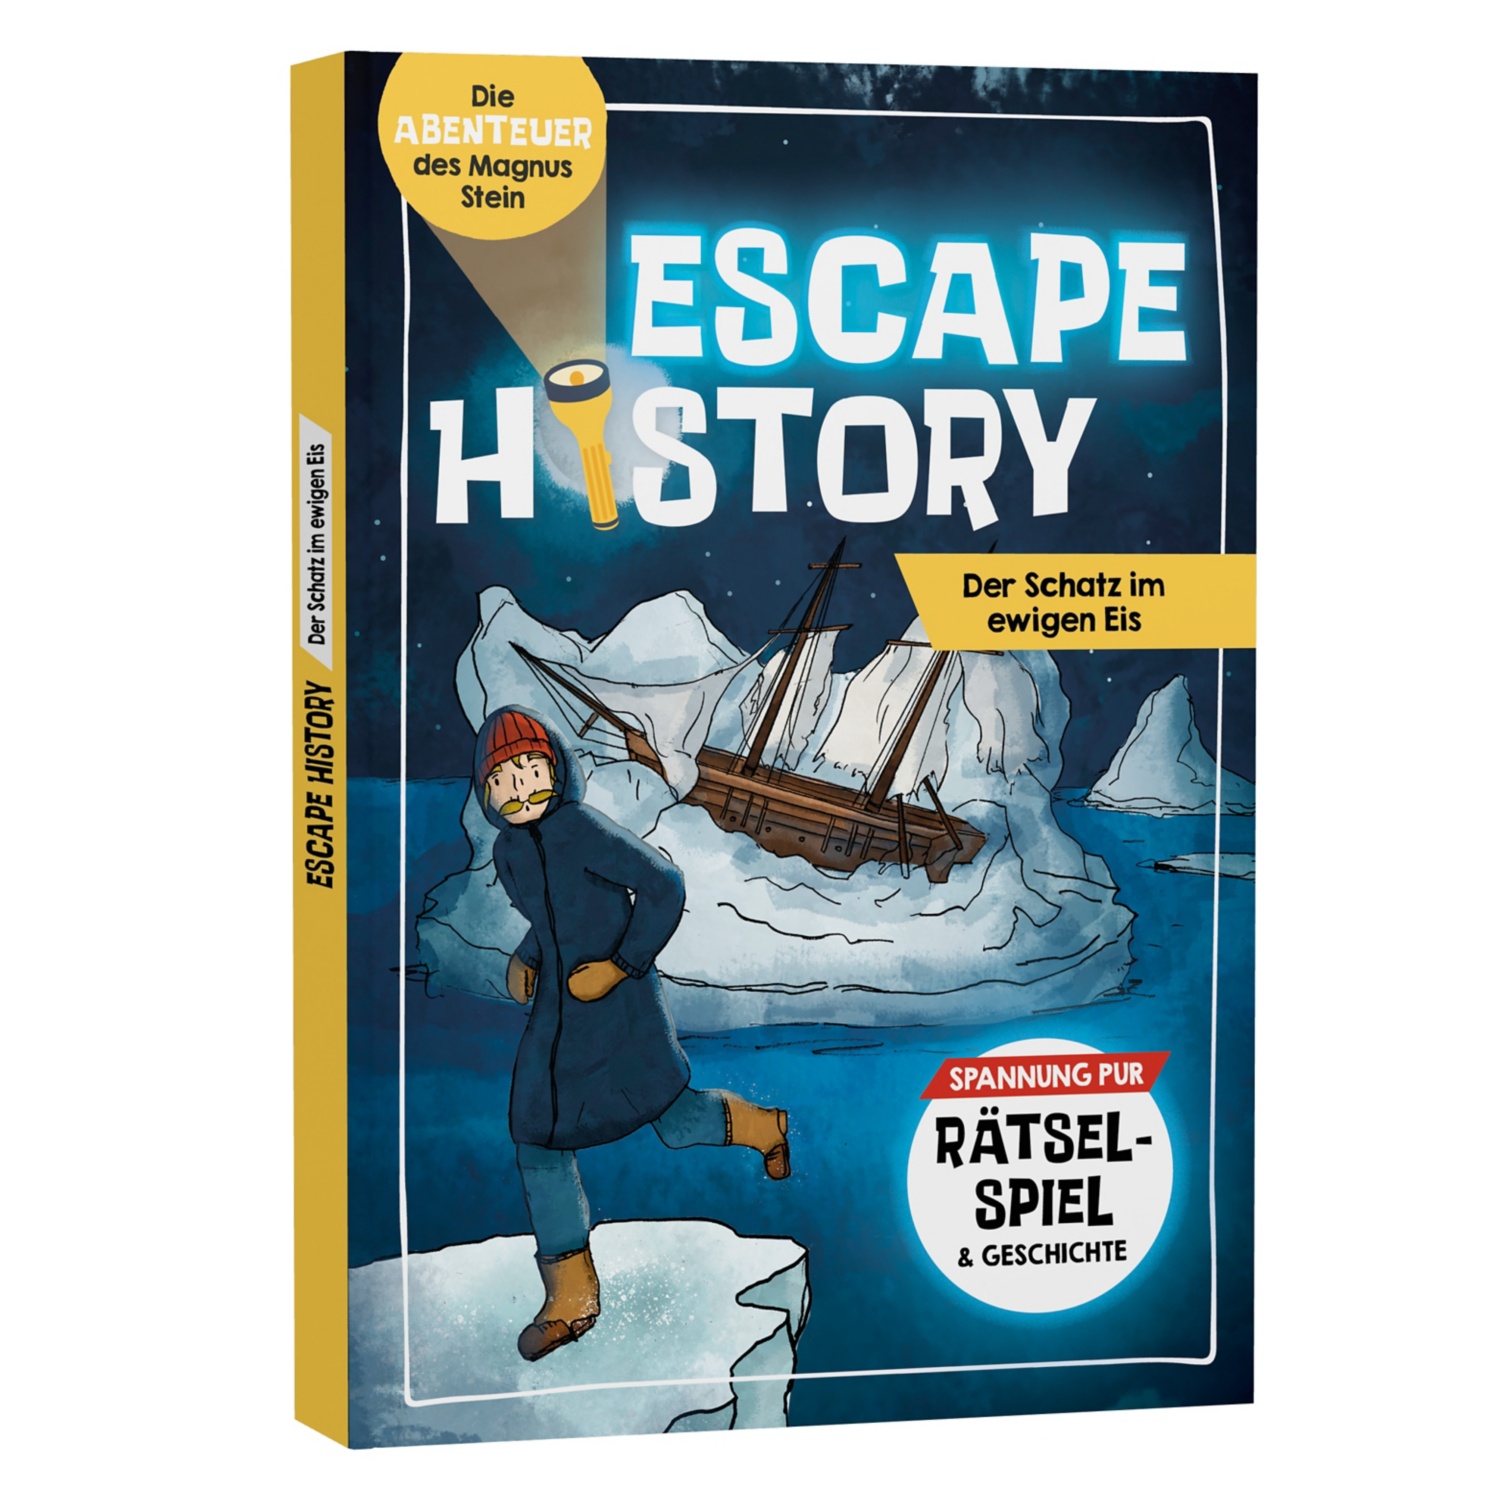 Escape History